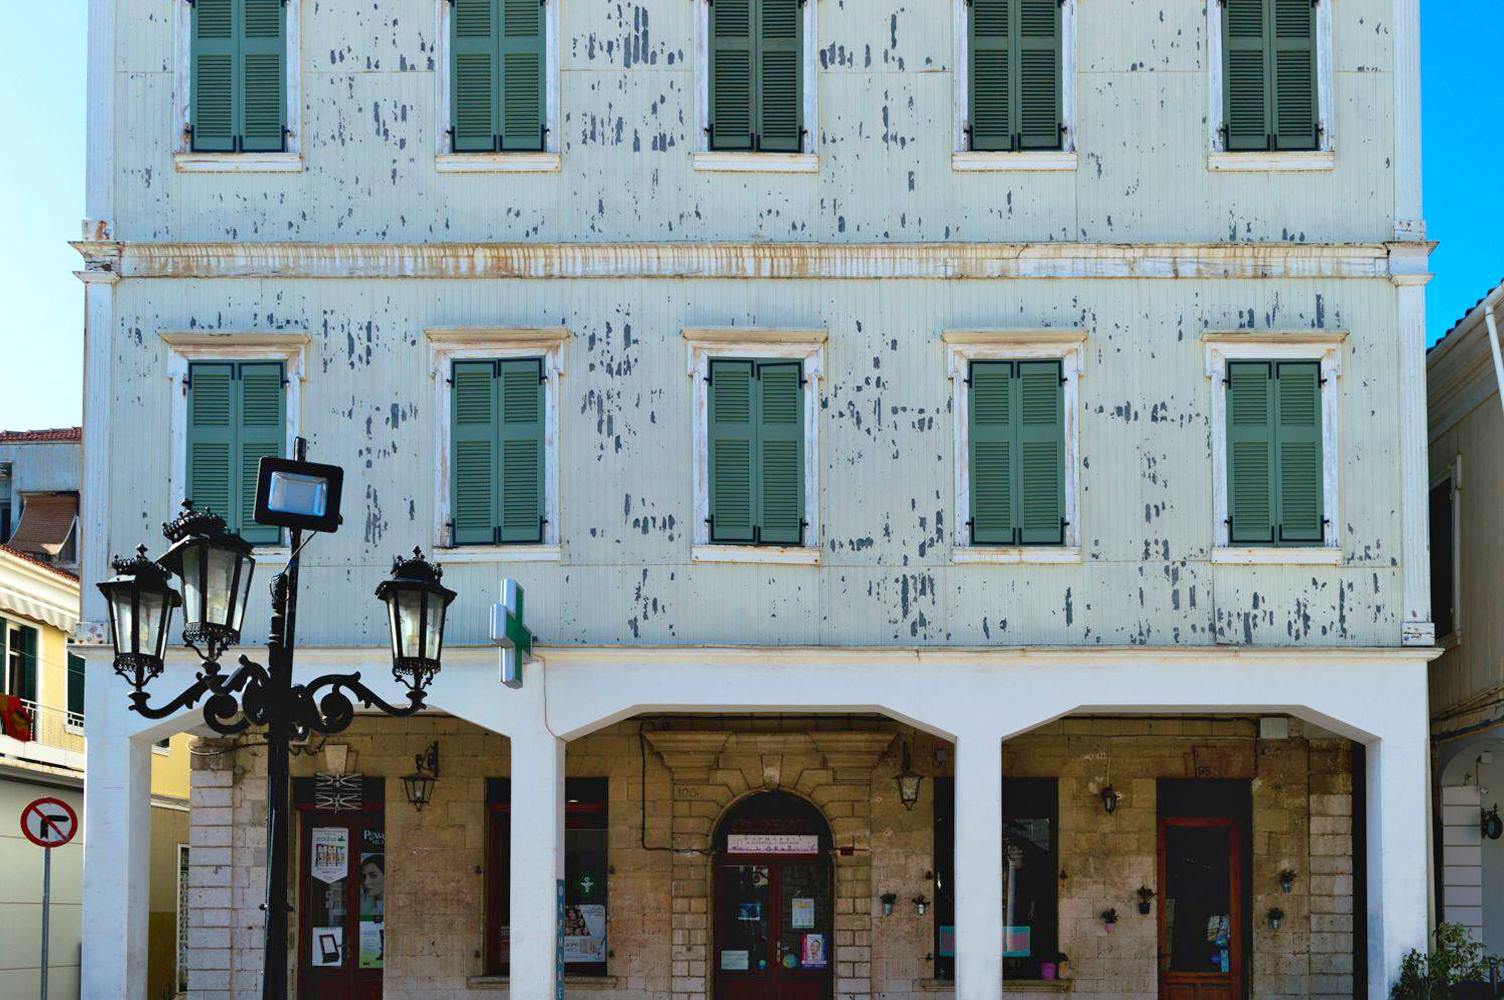 Κεντρικός πεζόδρομος Λευκάδας | Αρχιτεκτονική στη Λευκάδα | Lefkada Slow Guide